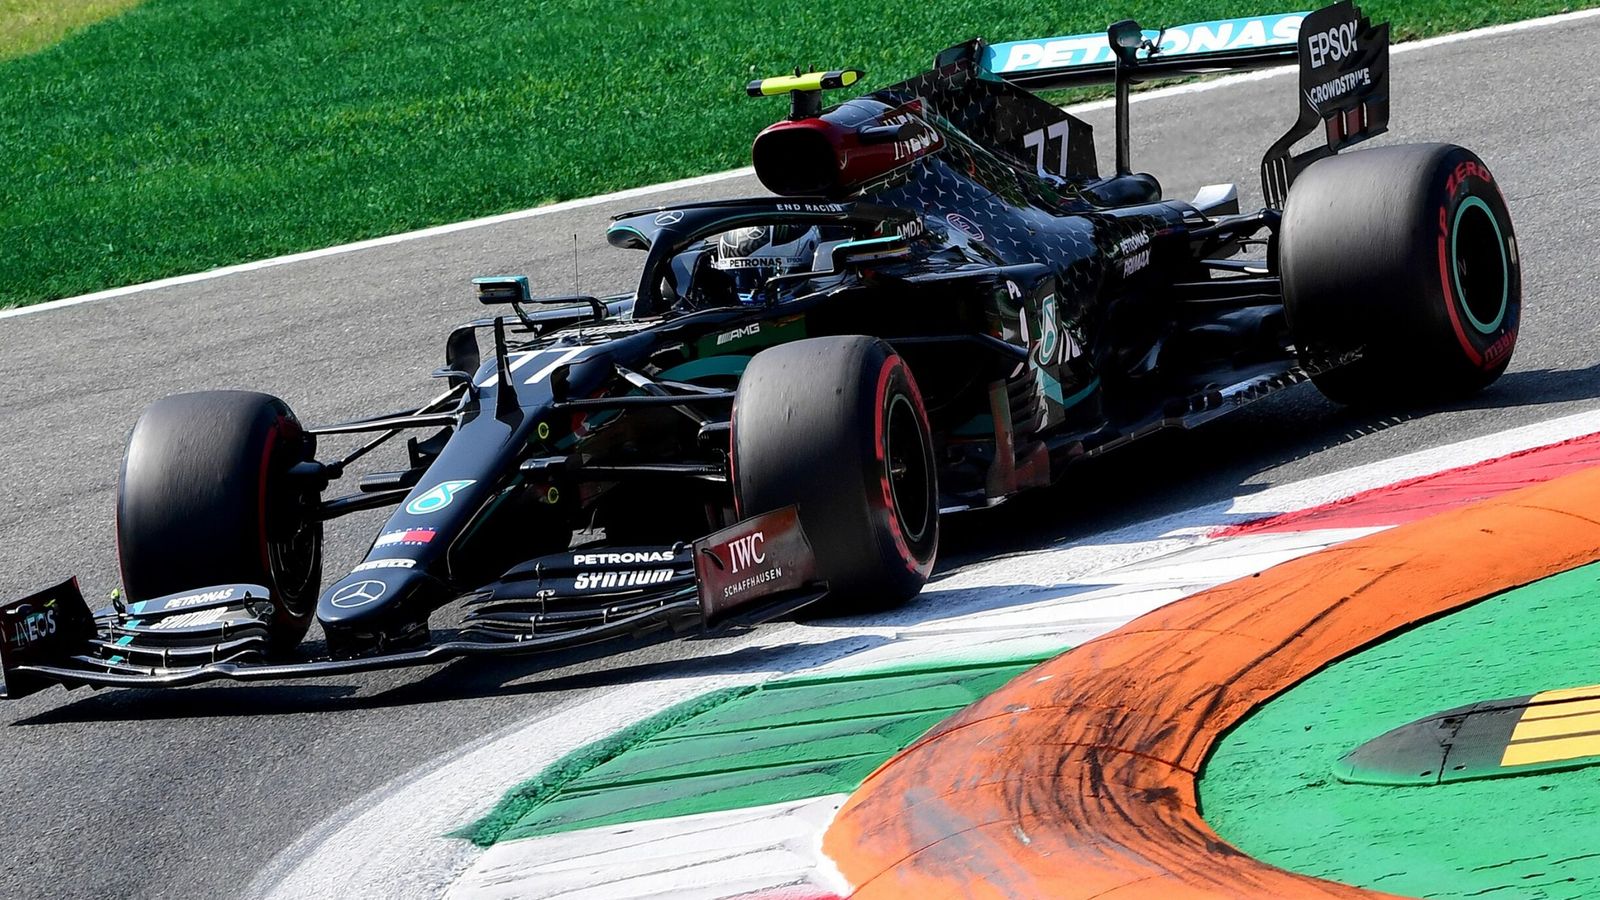 Italian Grand Prix, third practice: Valtteri Bottas leads McLarens fastest